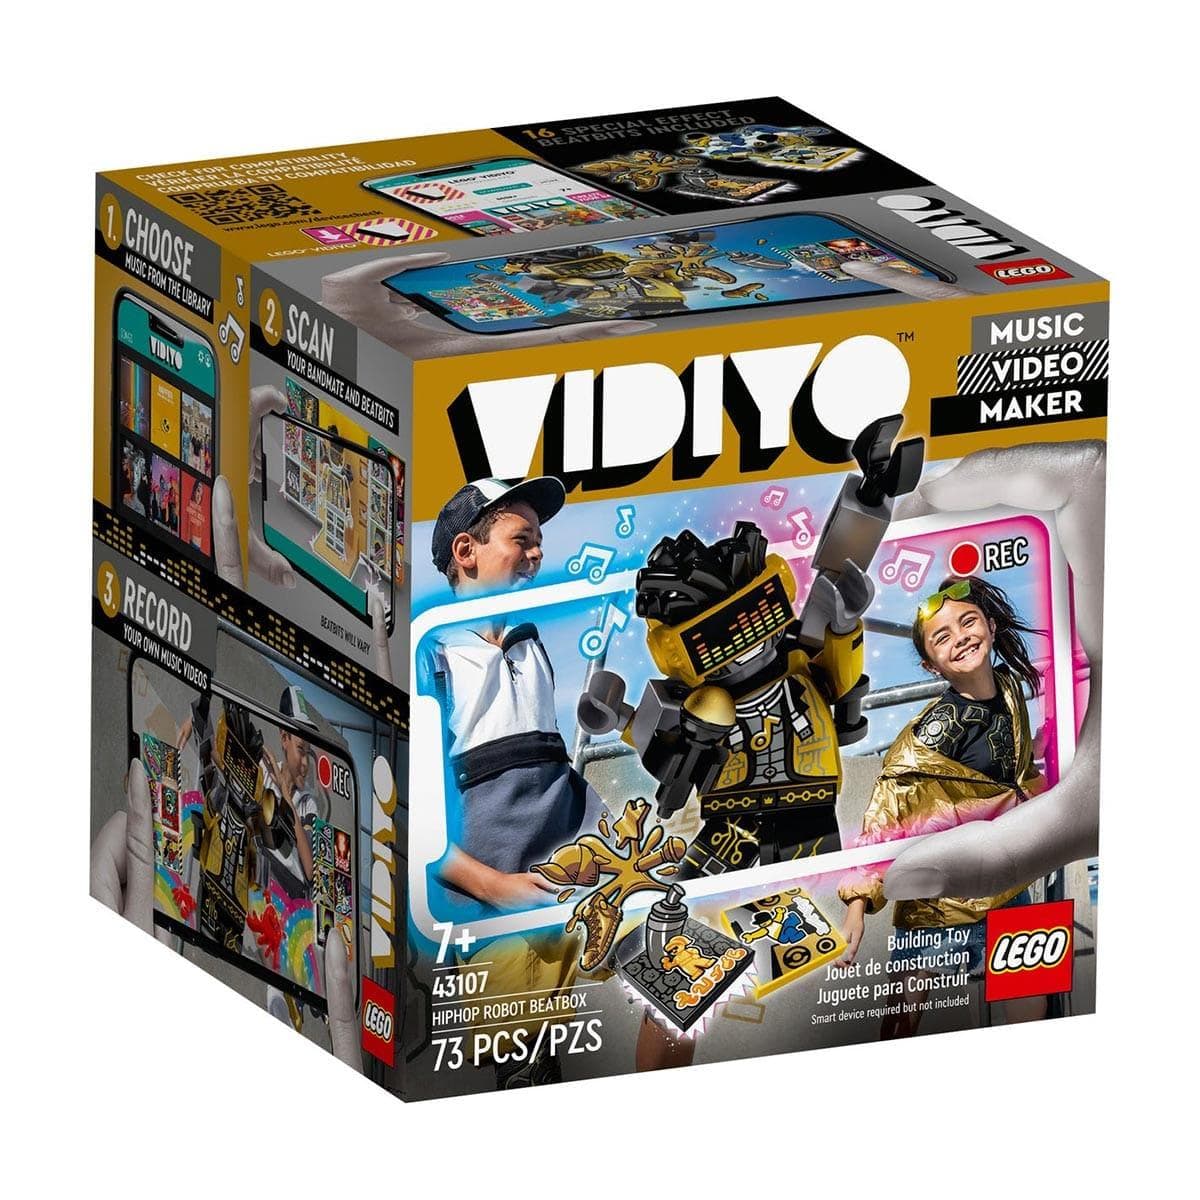 LEGO JOUET K.I.D. INC Toys & Games LEGO Vidiyo HipHop Robot BeatBox 43107, Ages 7+